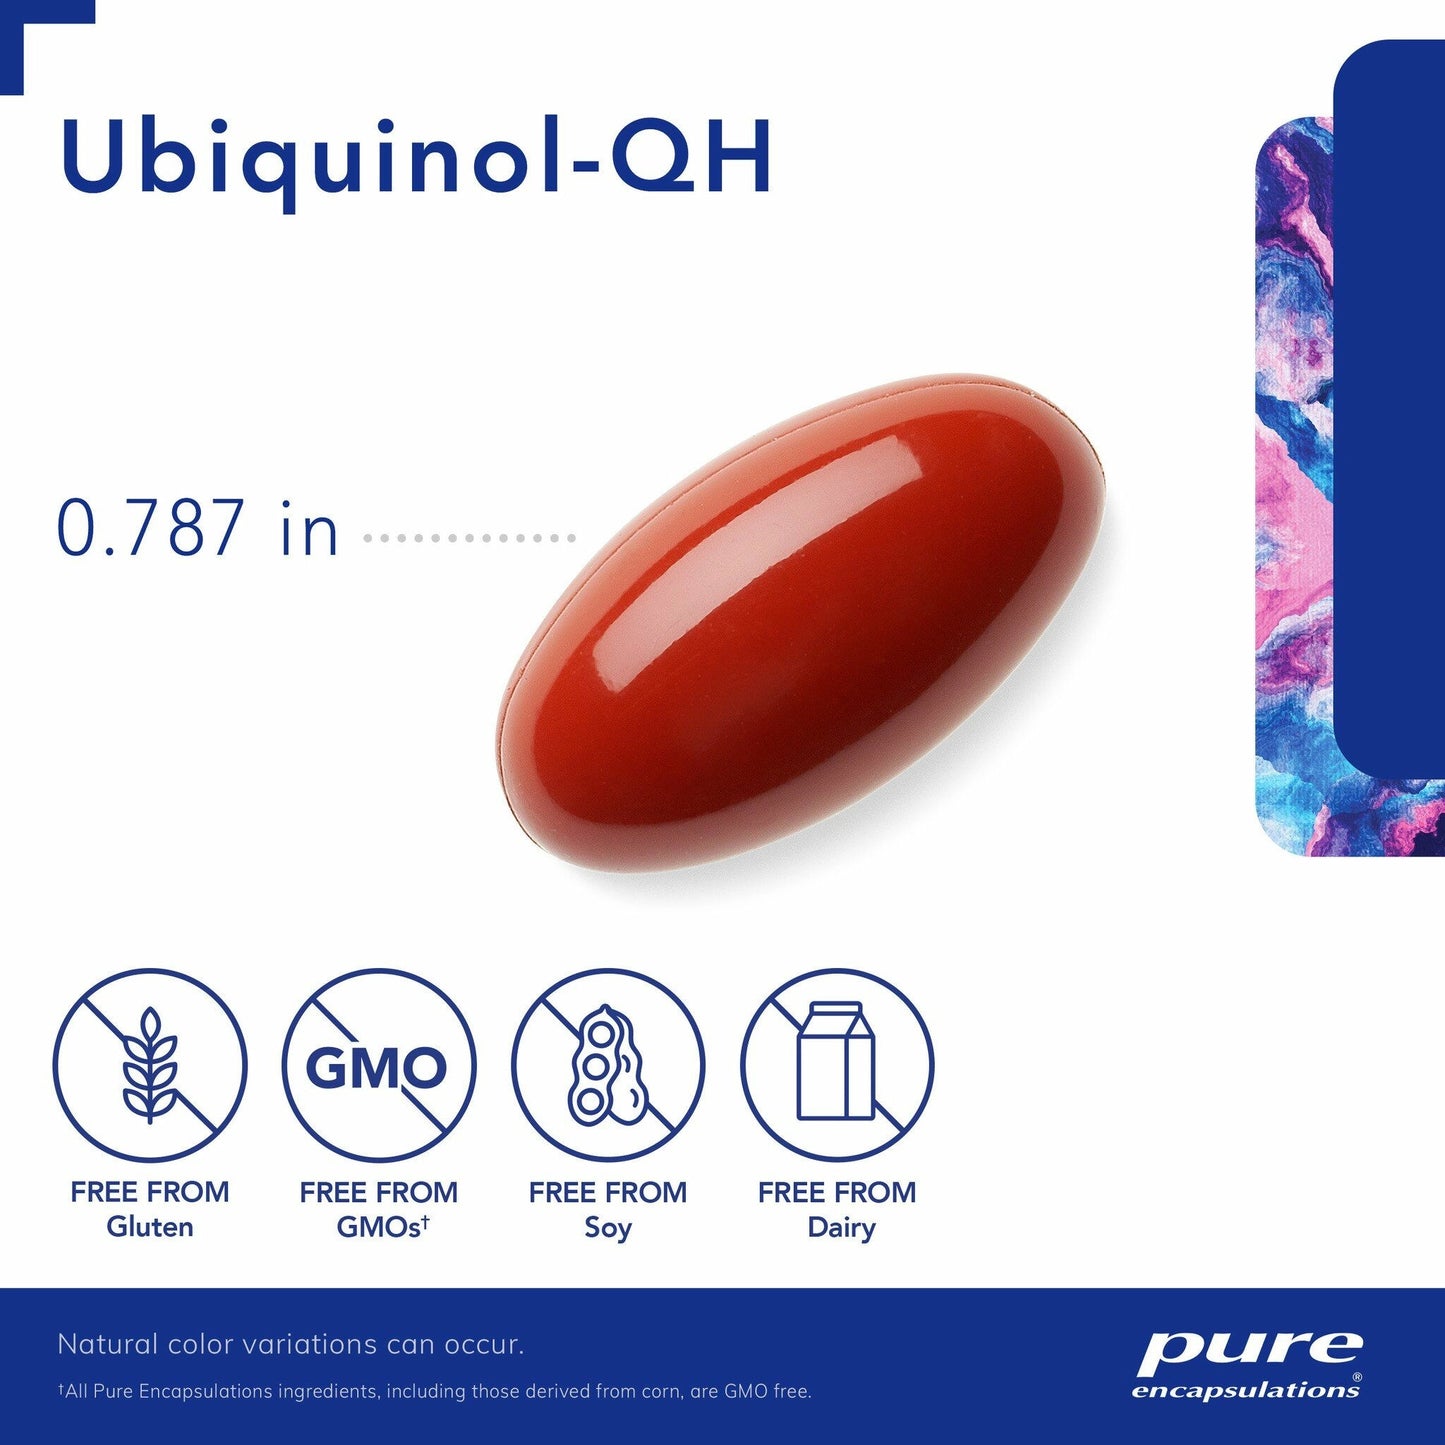 CoQ10: Ubiquinol QH: 50 mg